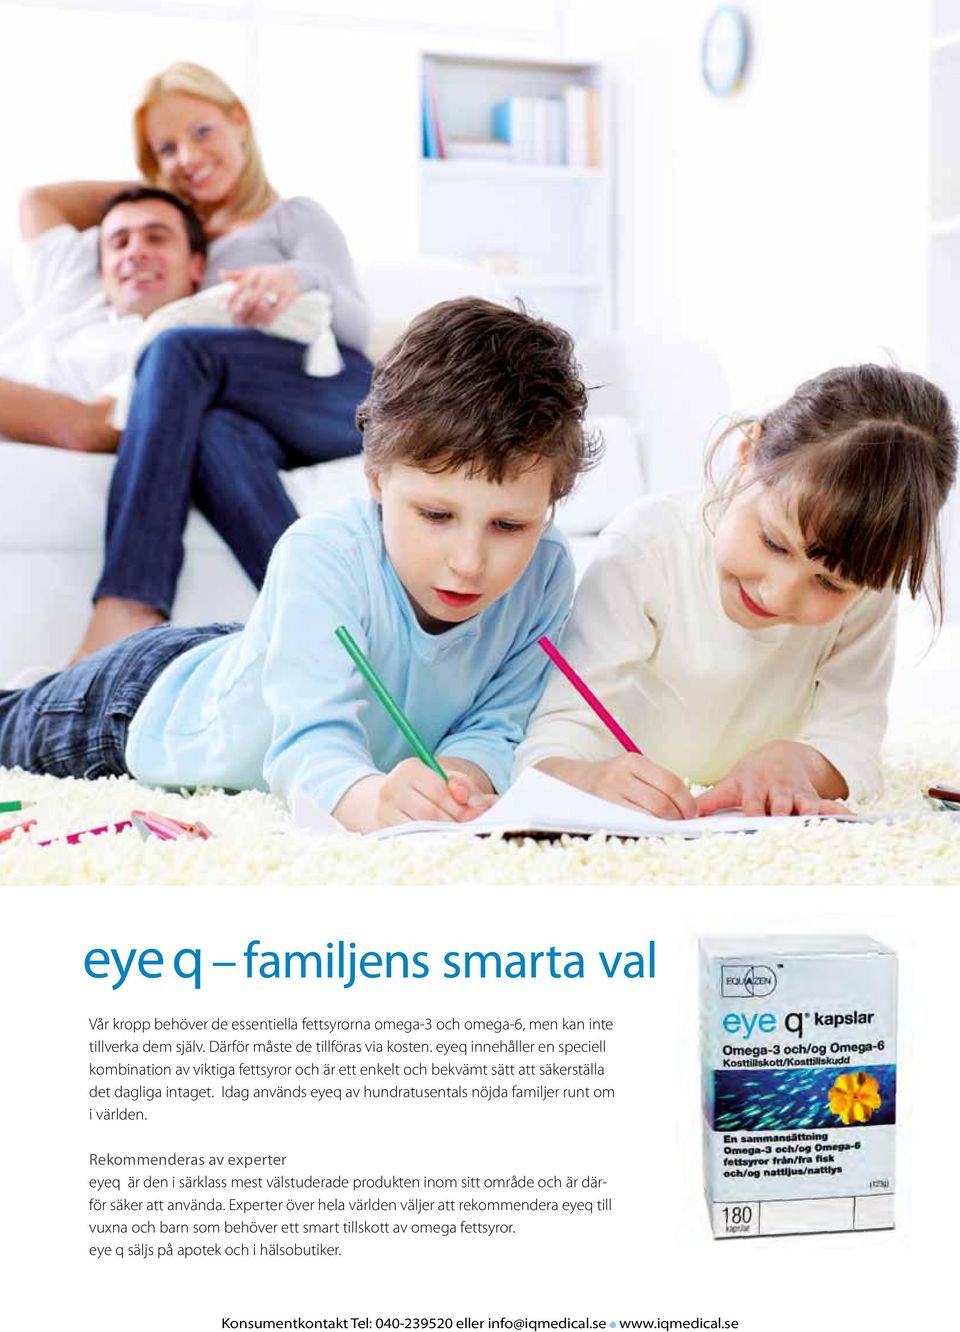 Idag används eyeq av hundratusentals nöjda familjer runt om i världen.